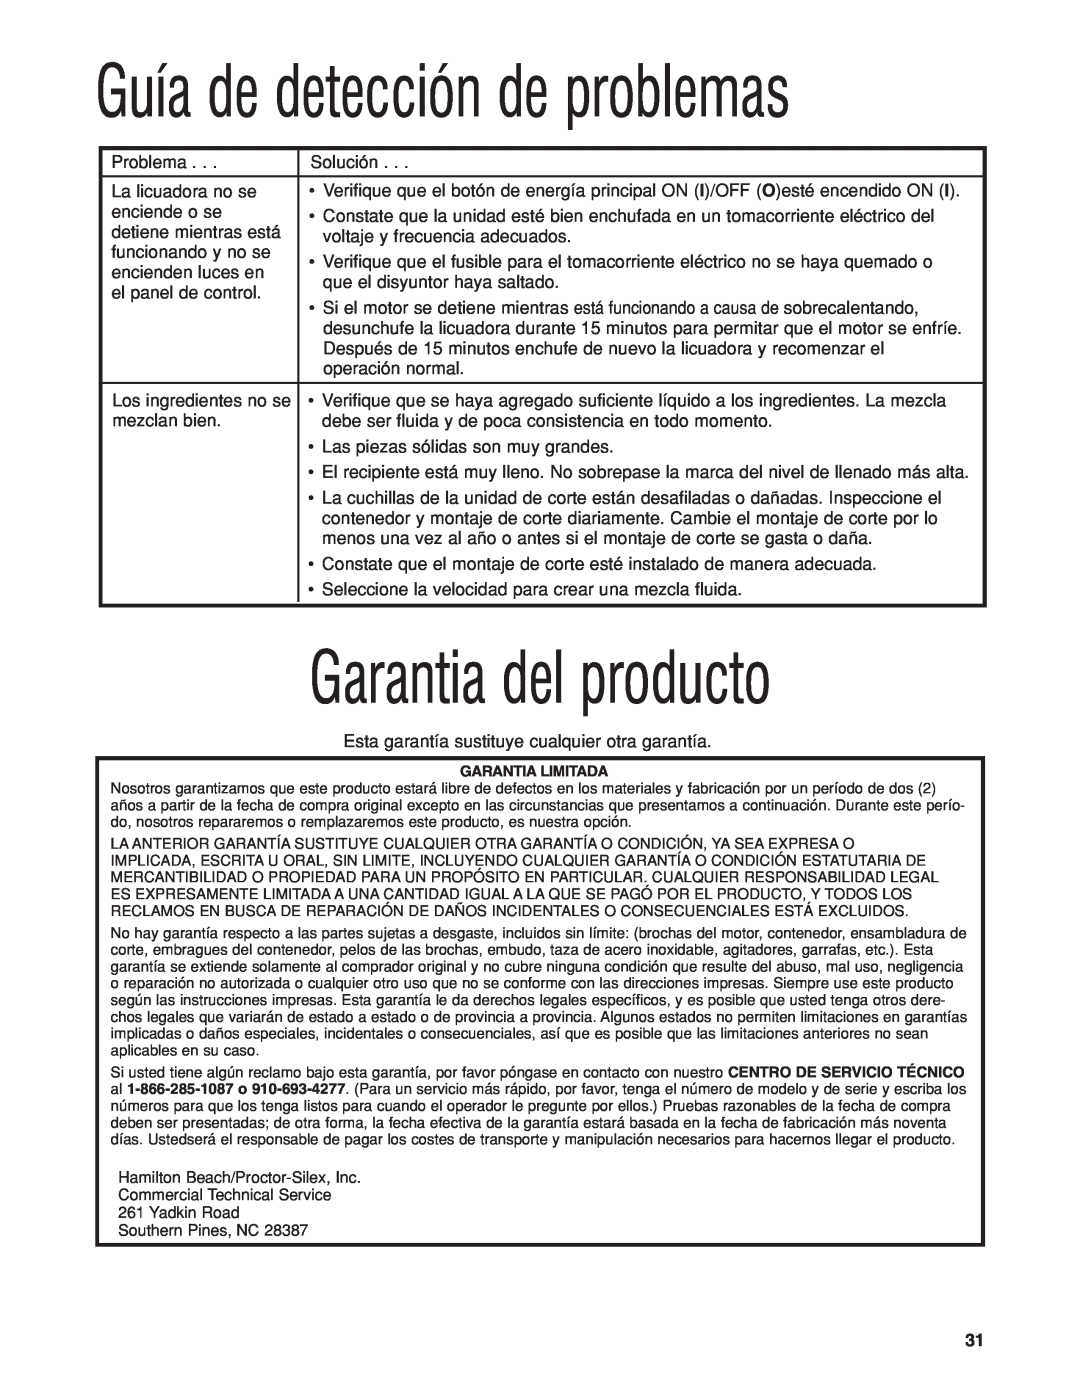 Hamilton Beach HBB250S manuel dutilisation Garantia del producto, Guía de detección de problemas 